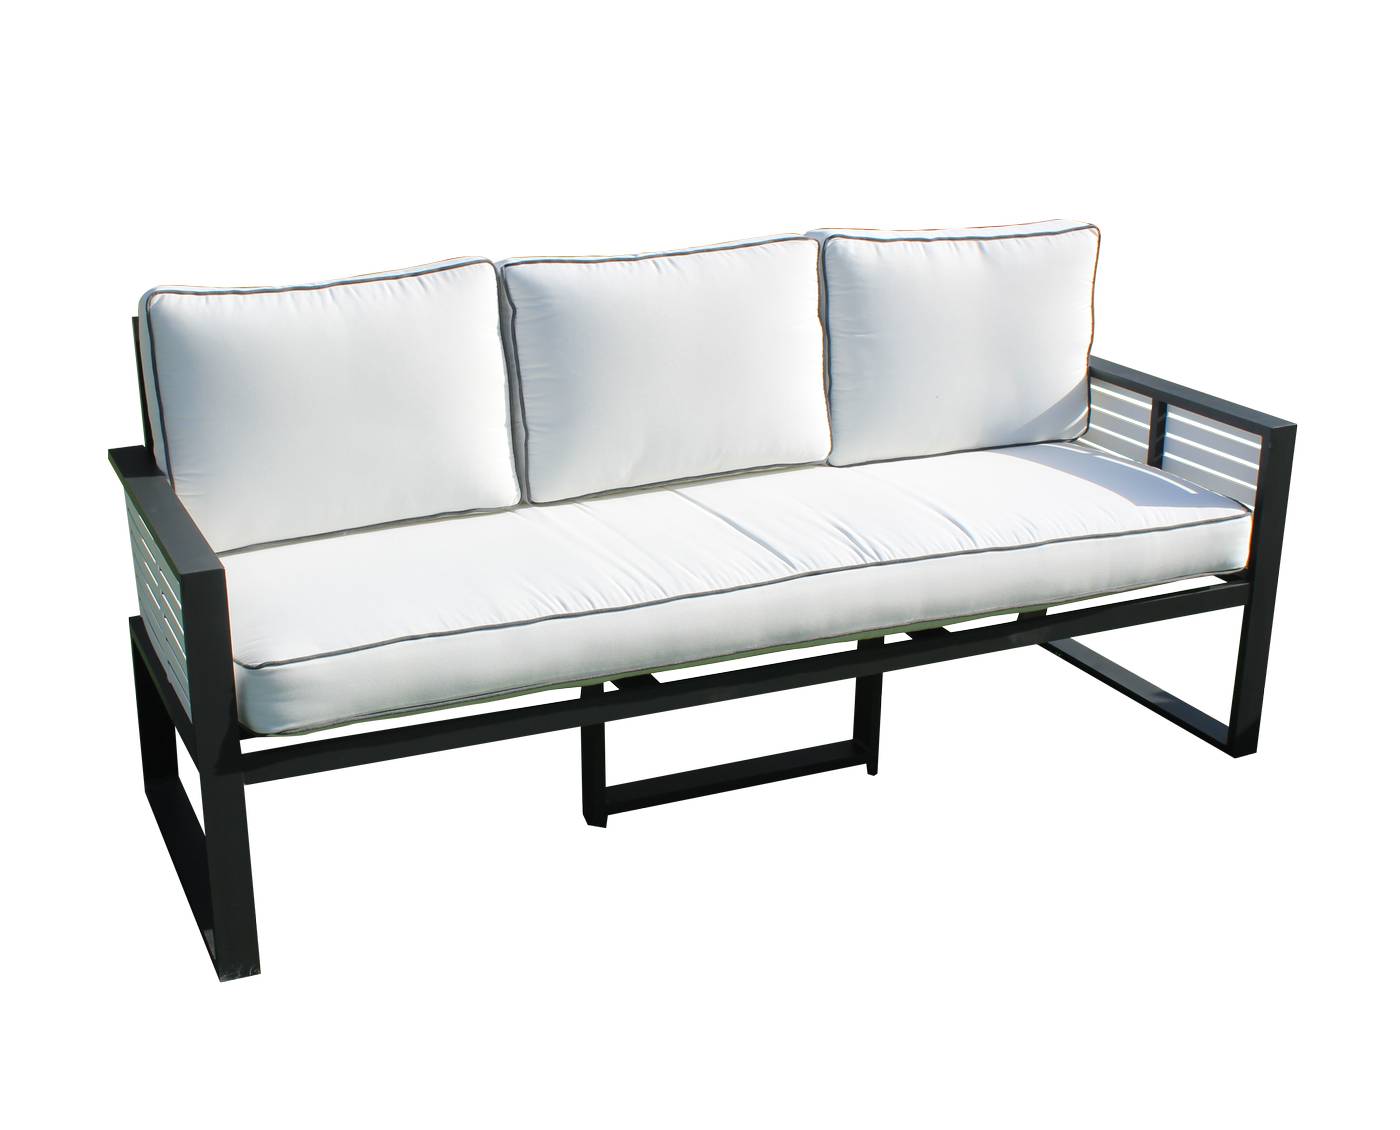 Sofá Aluminio Luxe Gala-3 - Exclusivo sofá 3 plazas de alumnio bicolor, con cojines gran confort desenfundables.